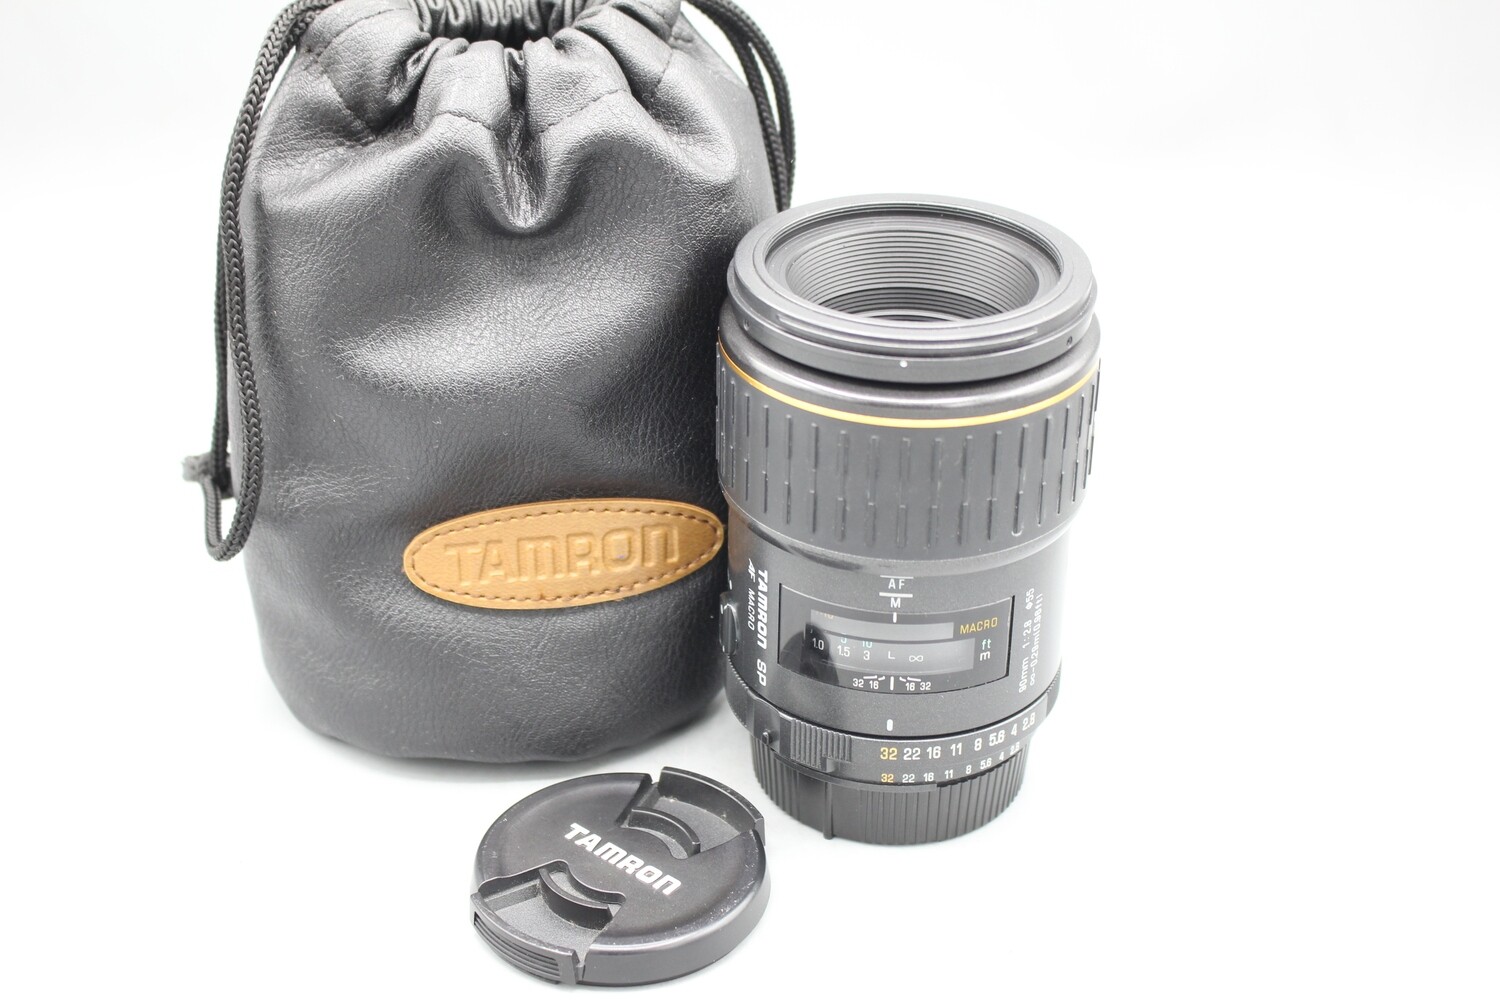 Tamron SP AF Macro 90mm 1:2.8 Lens for Nikon Cameras Tested EXC++